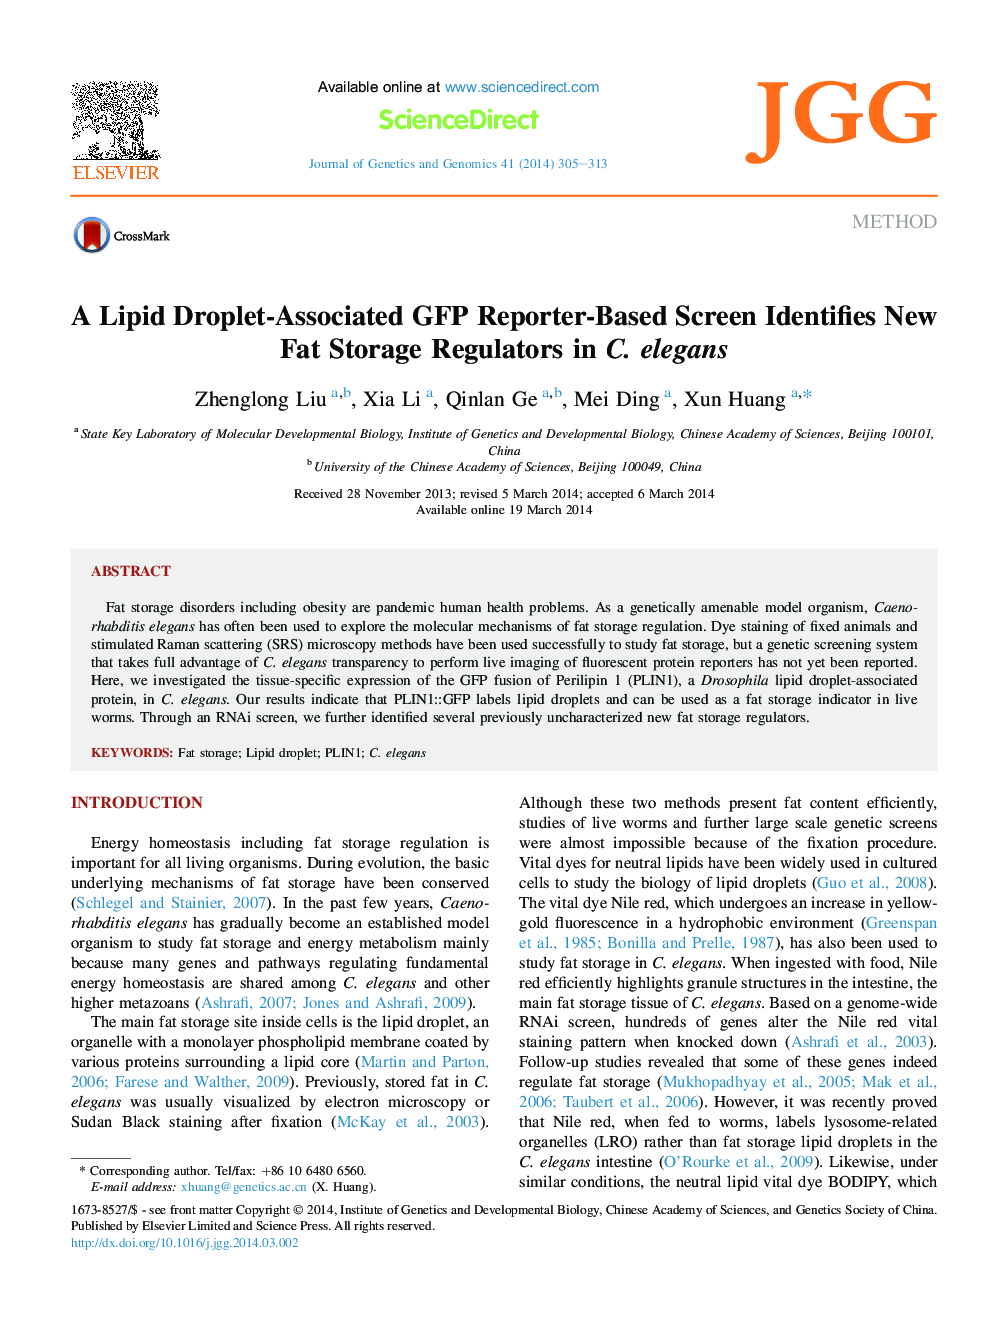 MethodA Lipid Droplet-Associated GFP Reporter-Based Screen Identifies New Fat Storage Regulators in C. elegans